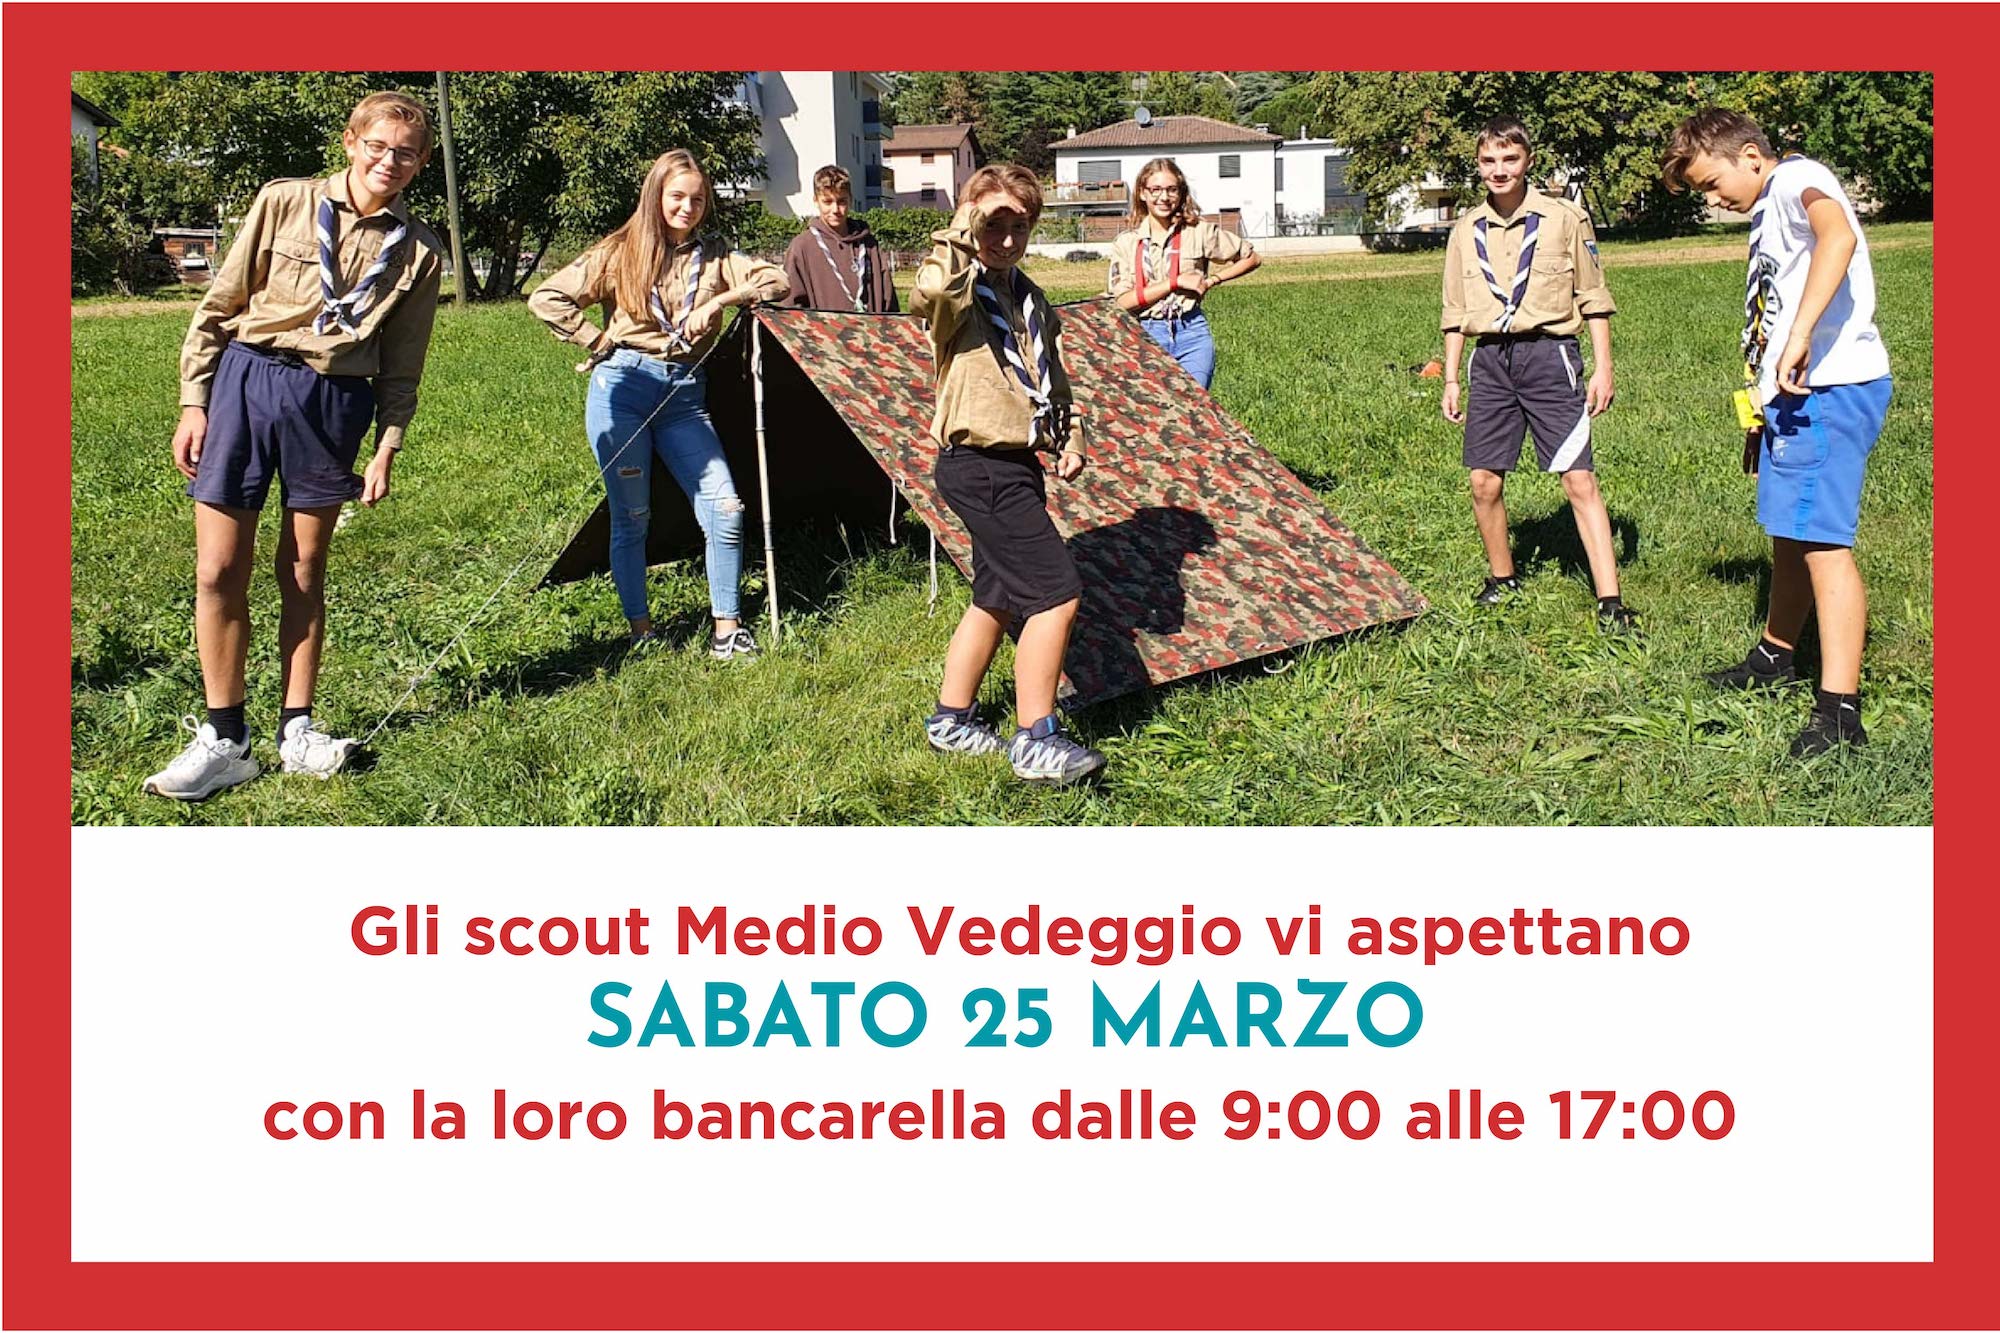 Gli scout Medio Vedeggio vi aspettano SABATO 25 MARZO  con la loro bancarella dalle 9:00 alle 17:00